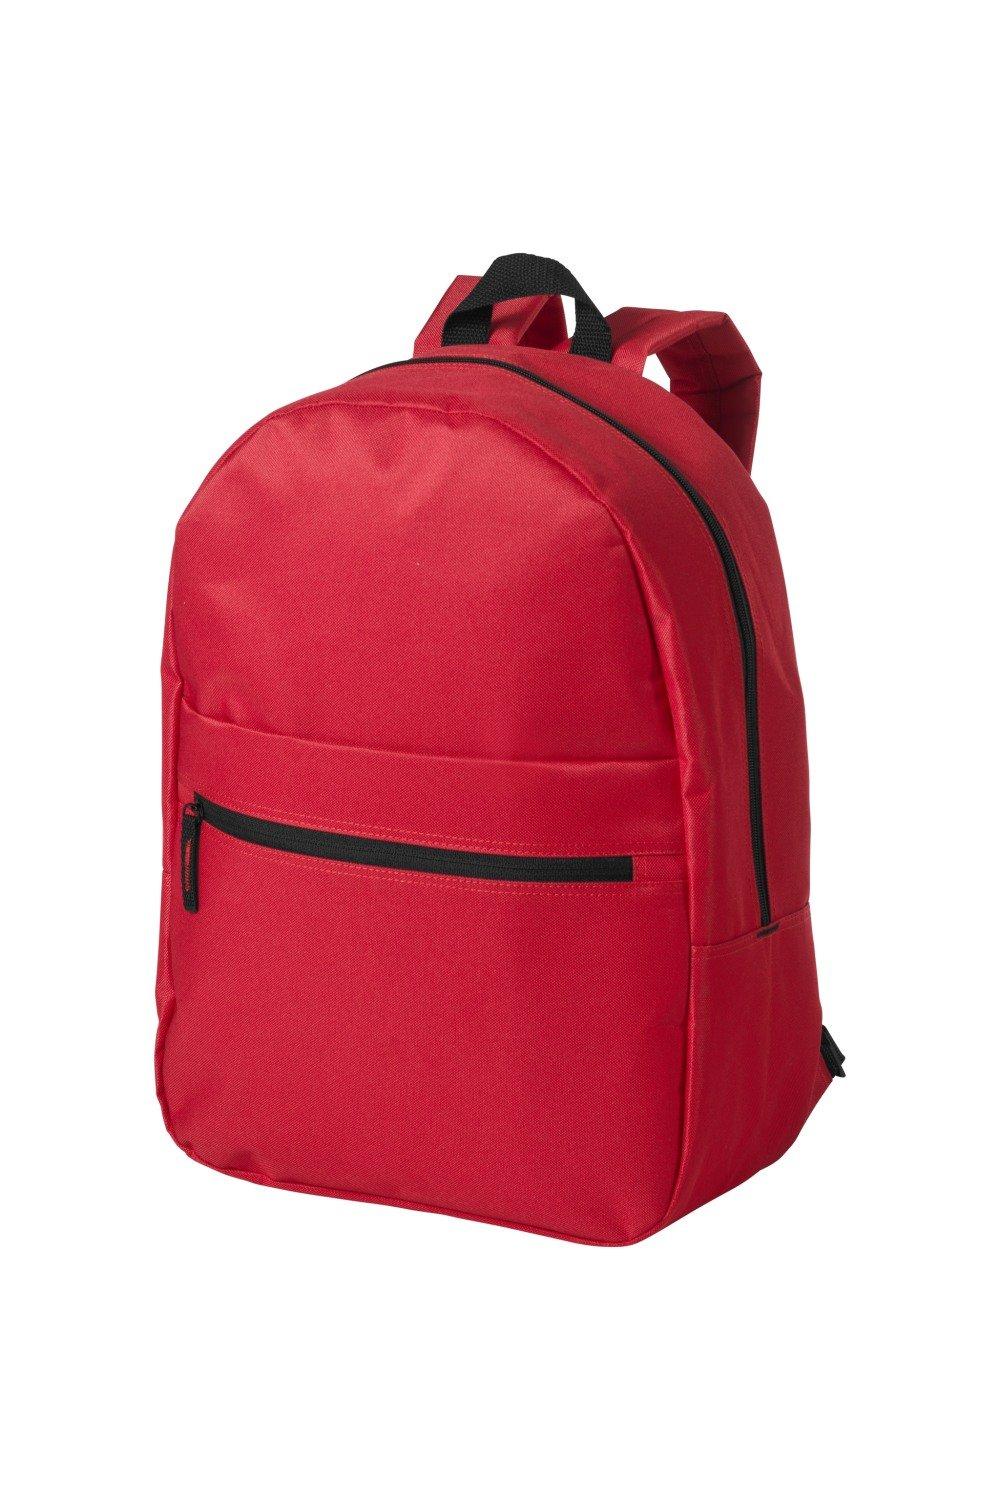 Ванкуверский рюкзак Bullet, красный фото